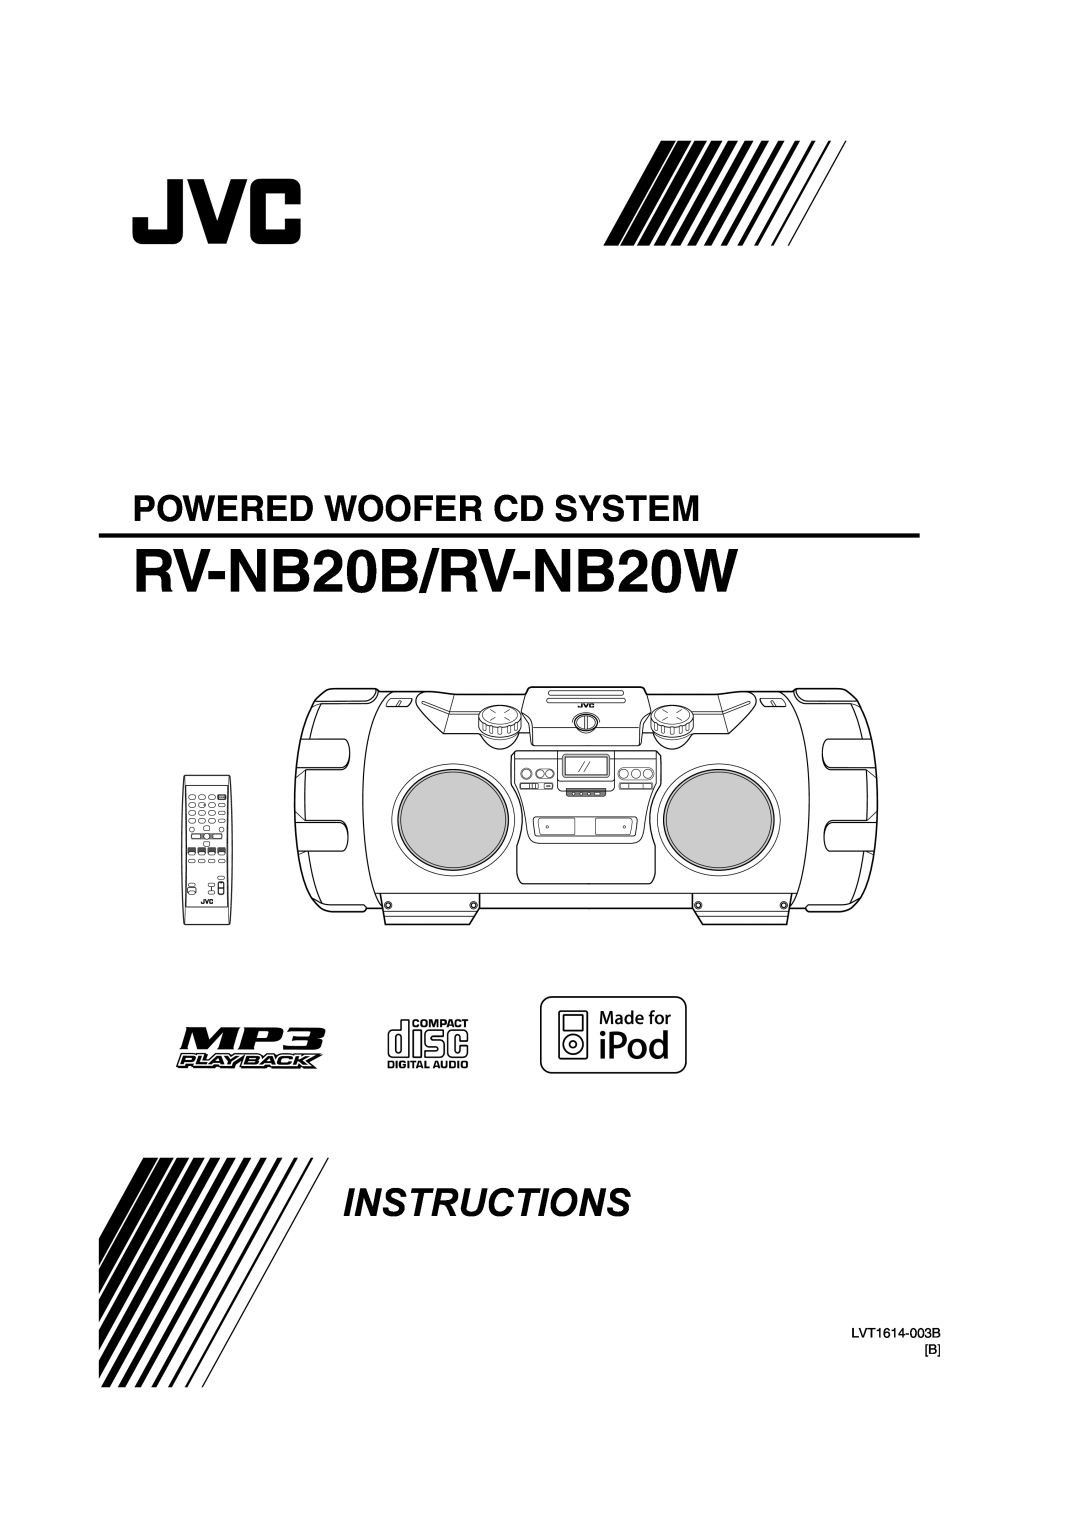 JVC manual RV-NB20B/RV-NB20W, Instructions, Powered Woofer Cd System, LVT1614-003BB 